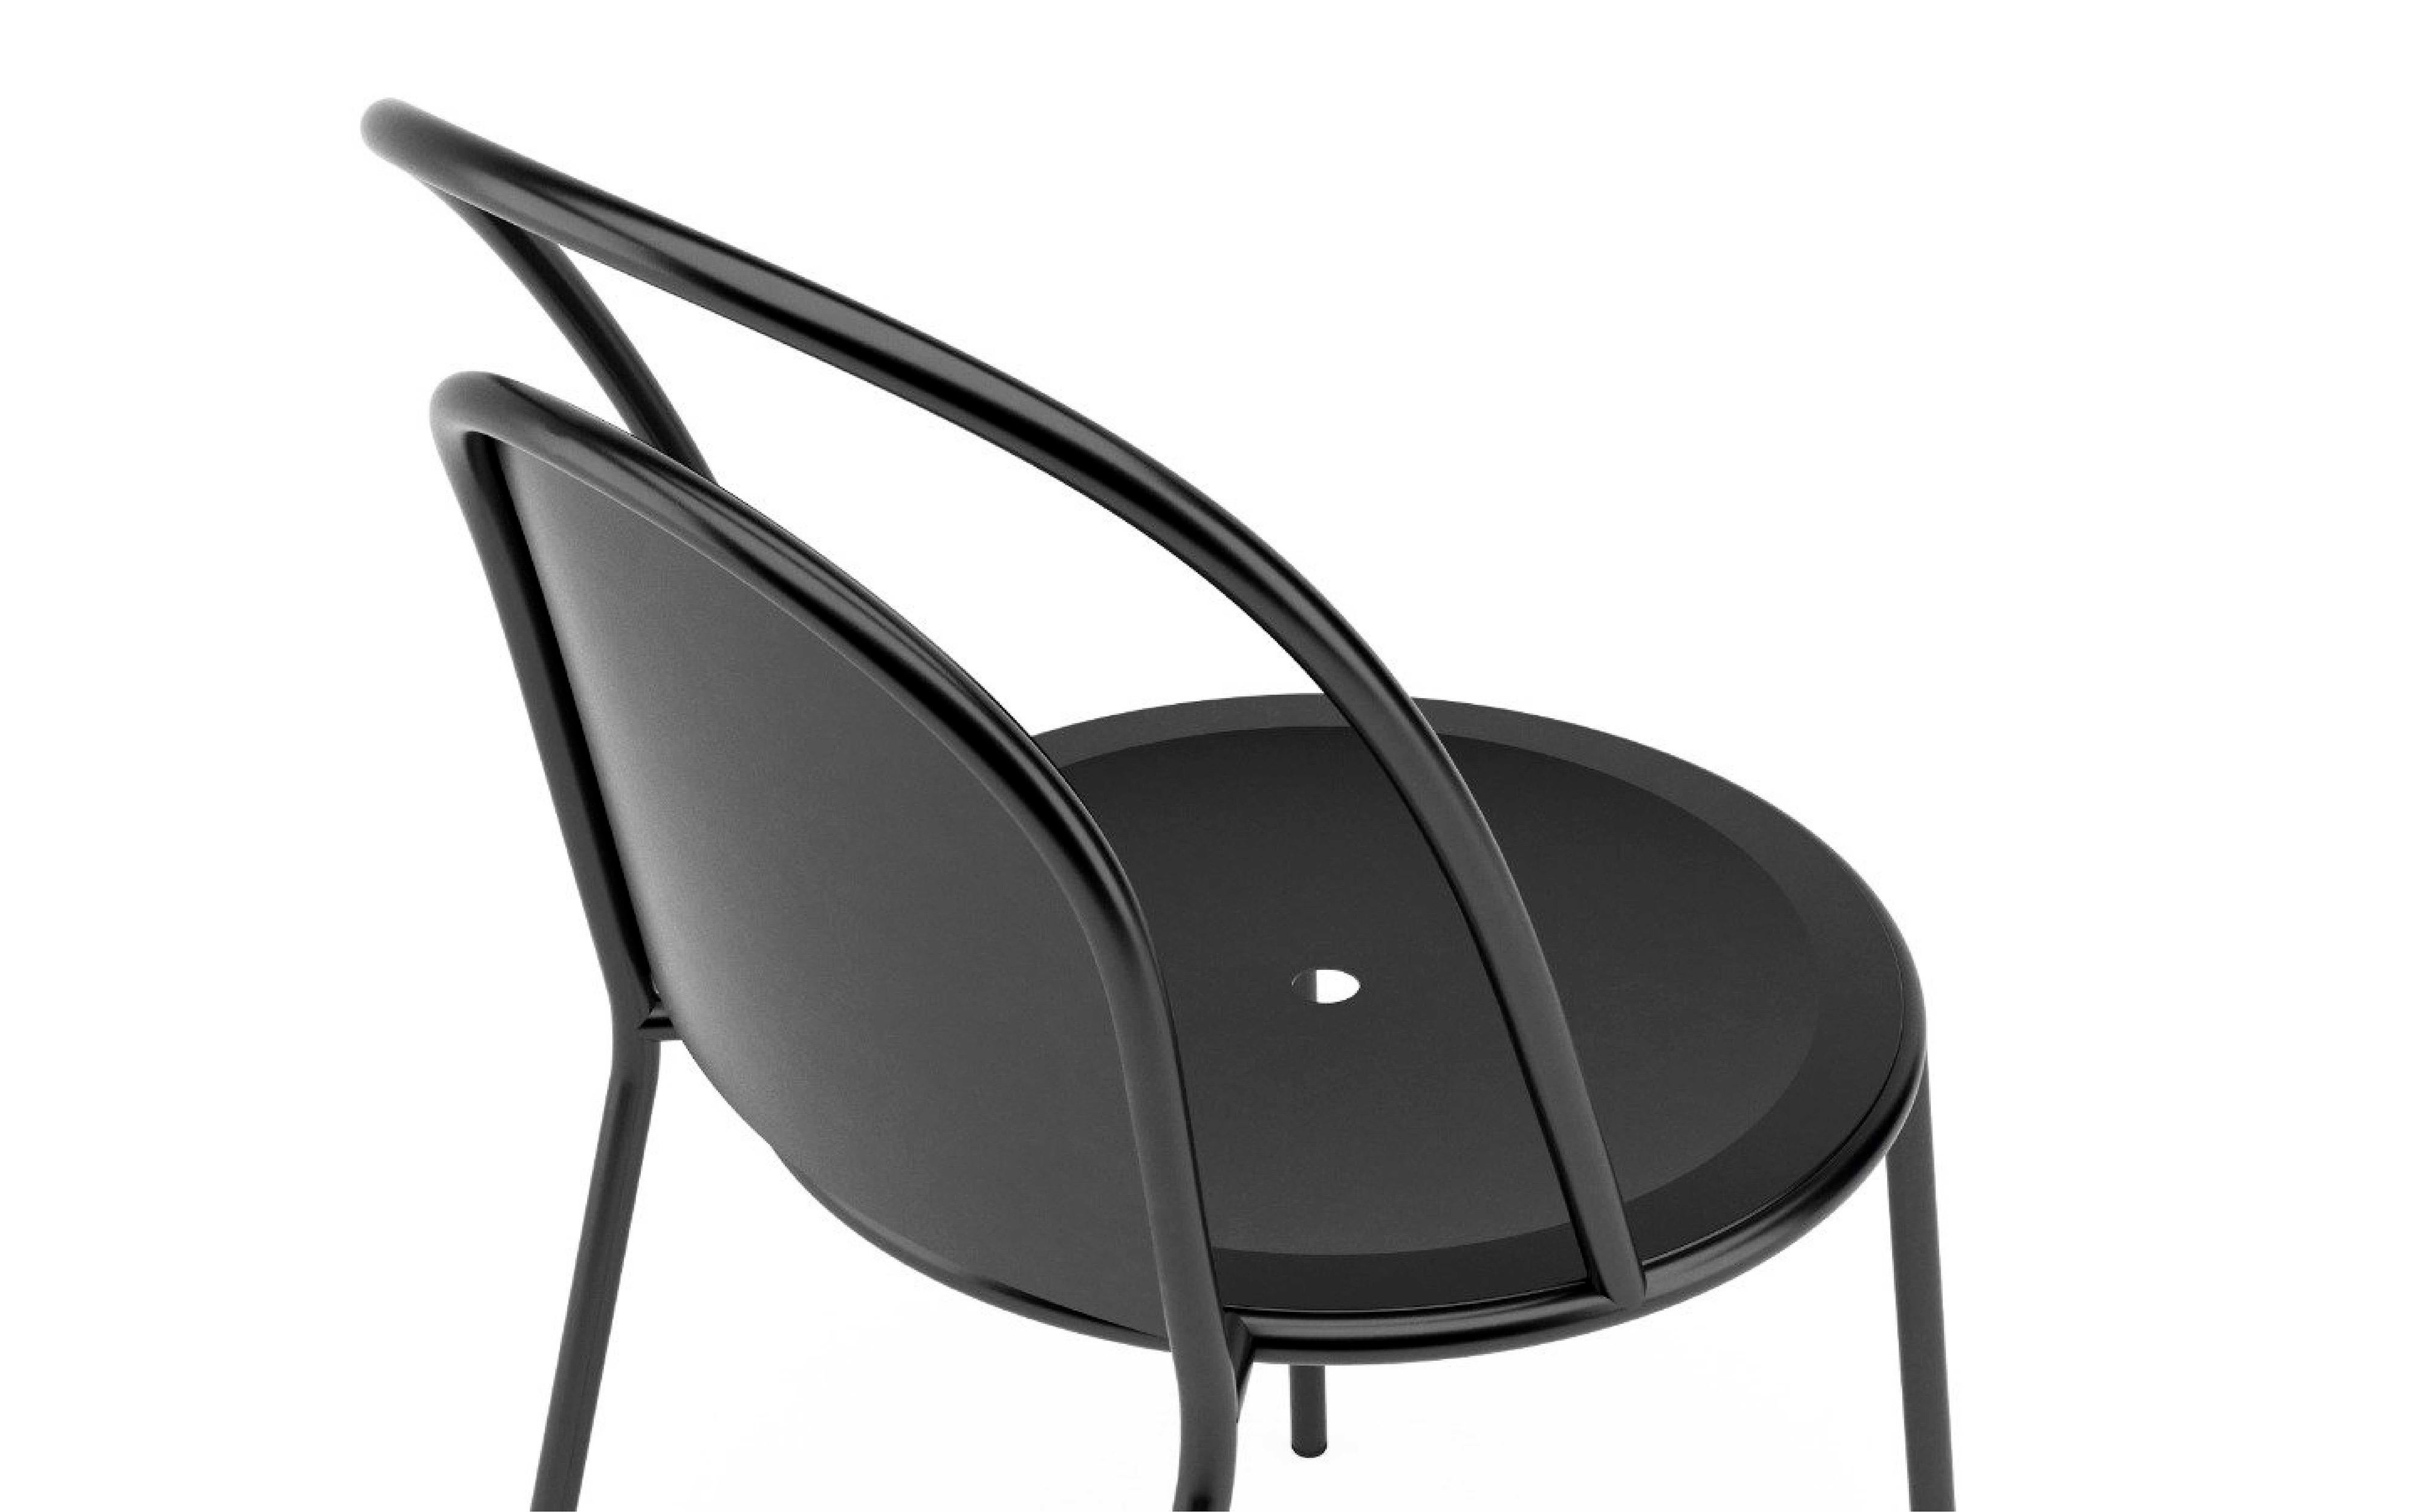 Das Design des Stuhls Dune basiert auf der sich wiederholenden Form des Bogens, architektonisch und mathematisch. Dieser Stuhl hat eine elegante und leichte Ästhetik und ist für den Außenbereich geeignet.

Innen / Außen
MATERIAL -